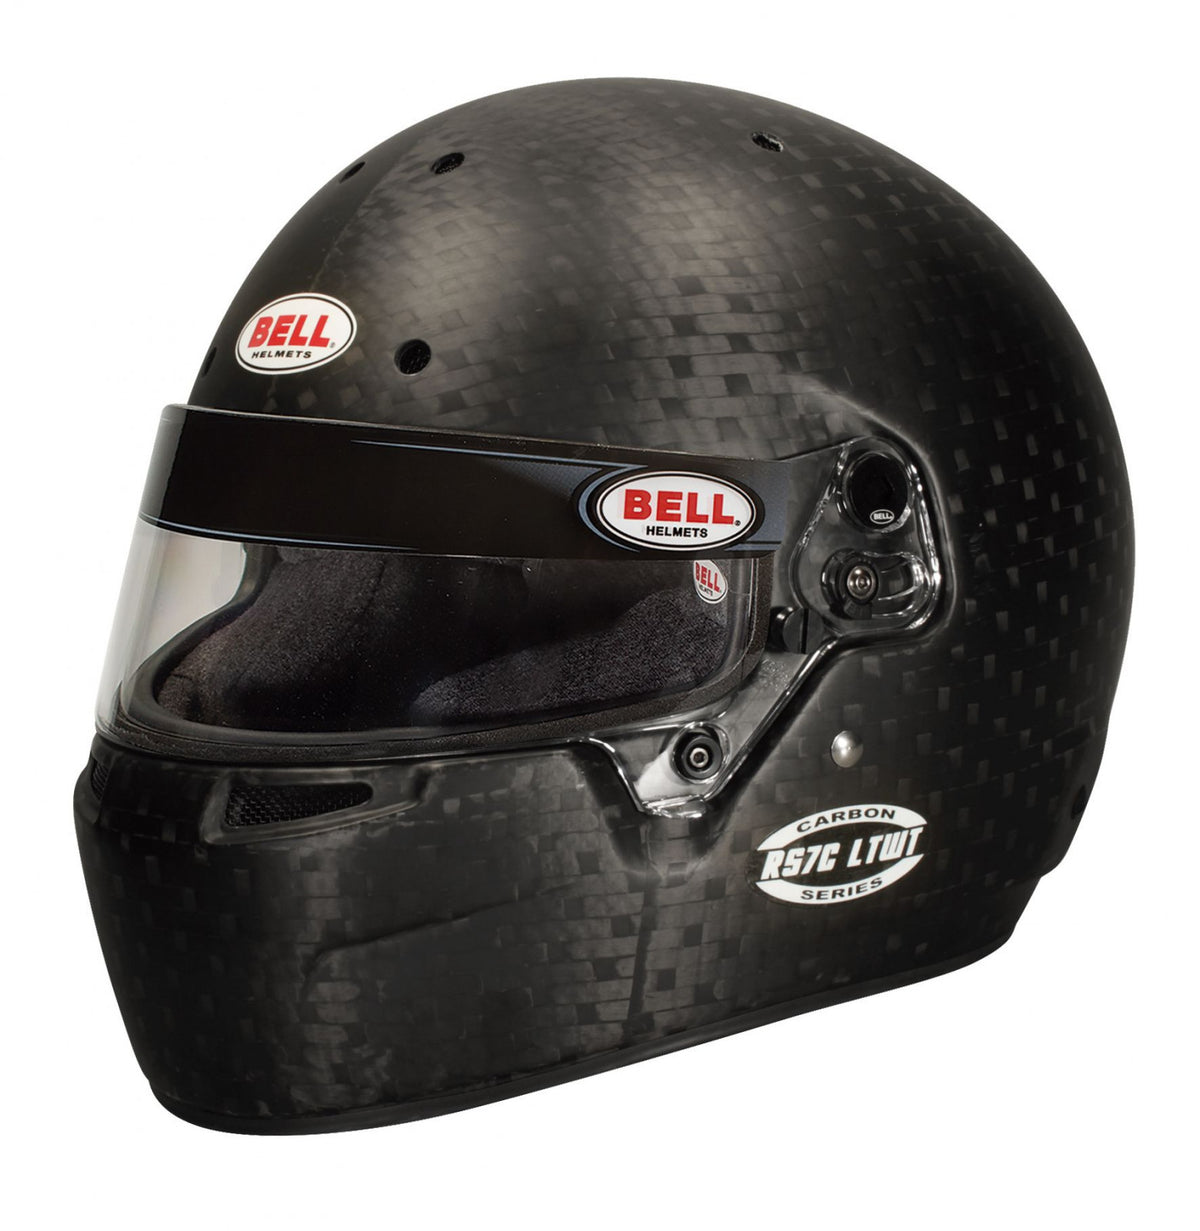 Bell Racing RS7C LTWT Helmet 7 3/8 (59 cm)